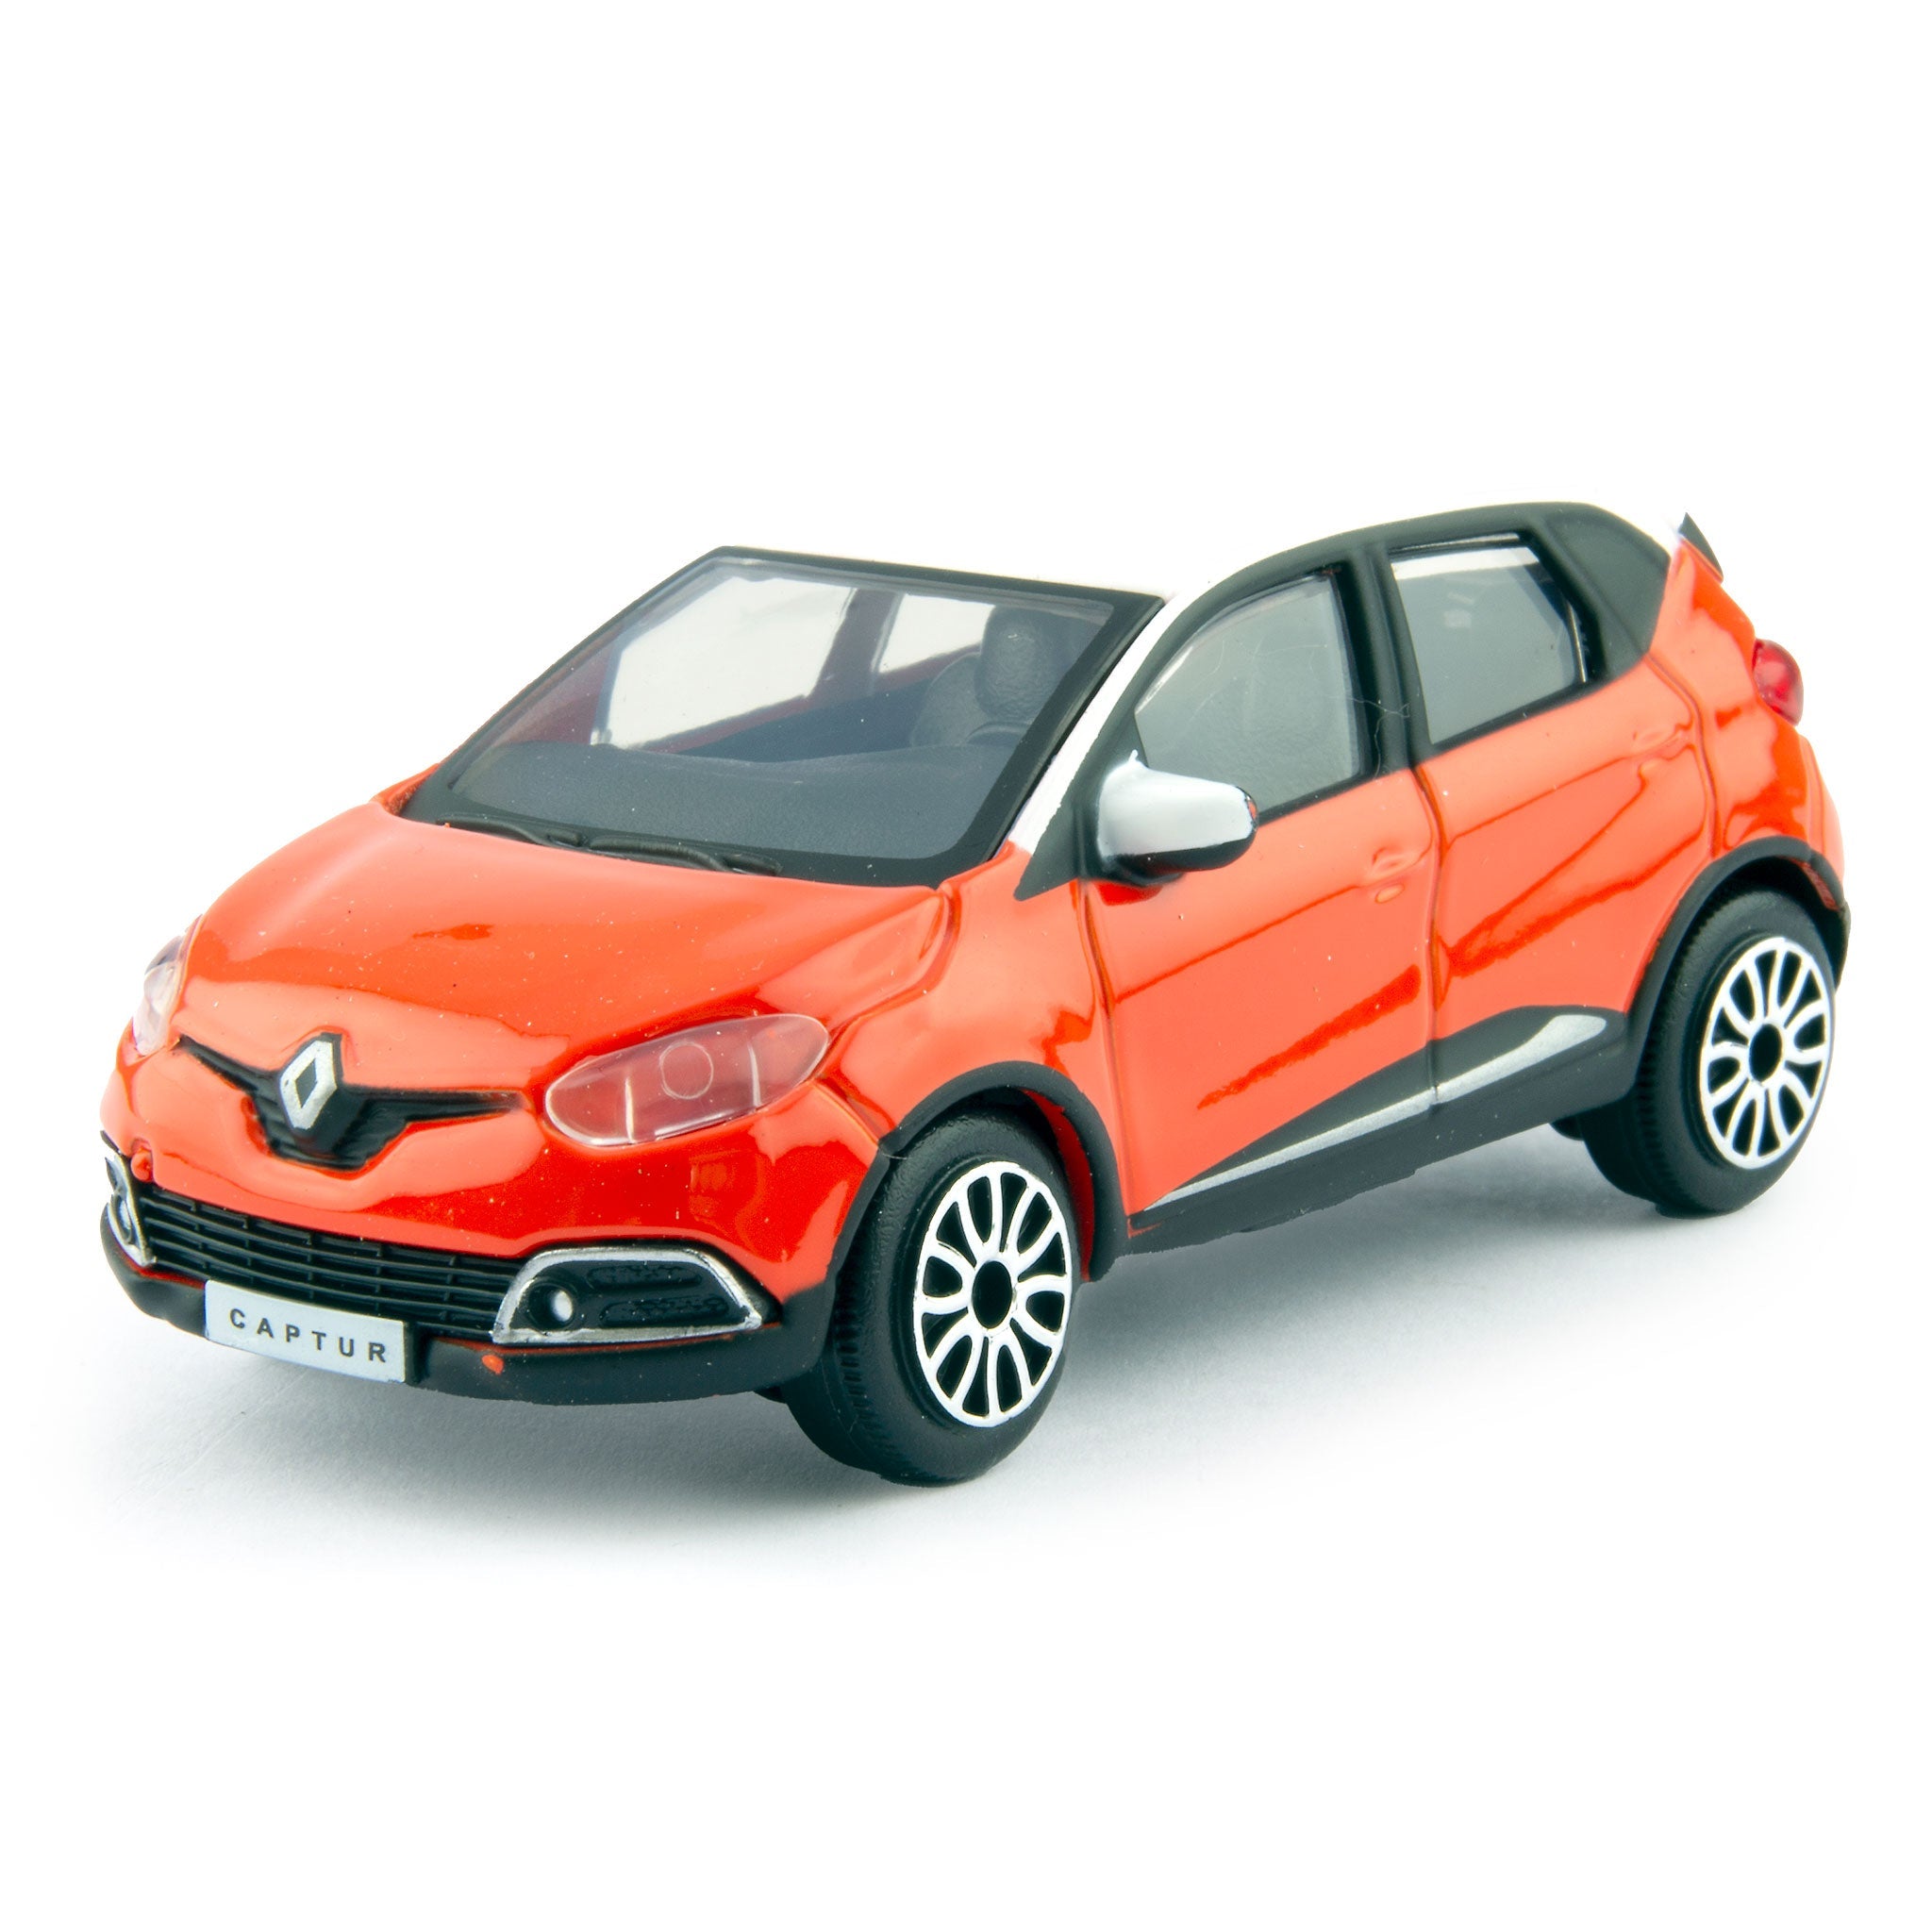 Renault Captur orange/white - 1:43 Scale Diecast Toy Car-Bburago-Diecast Model Centre